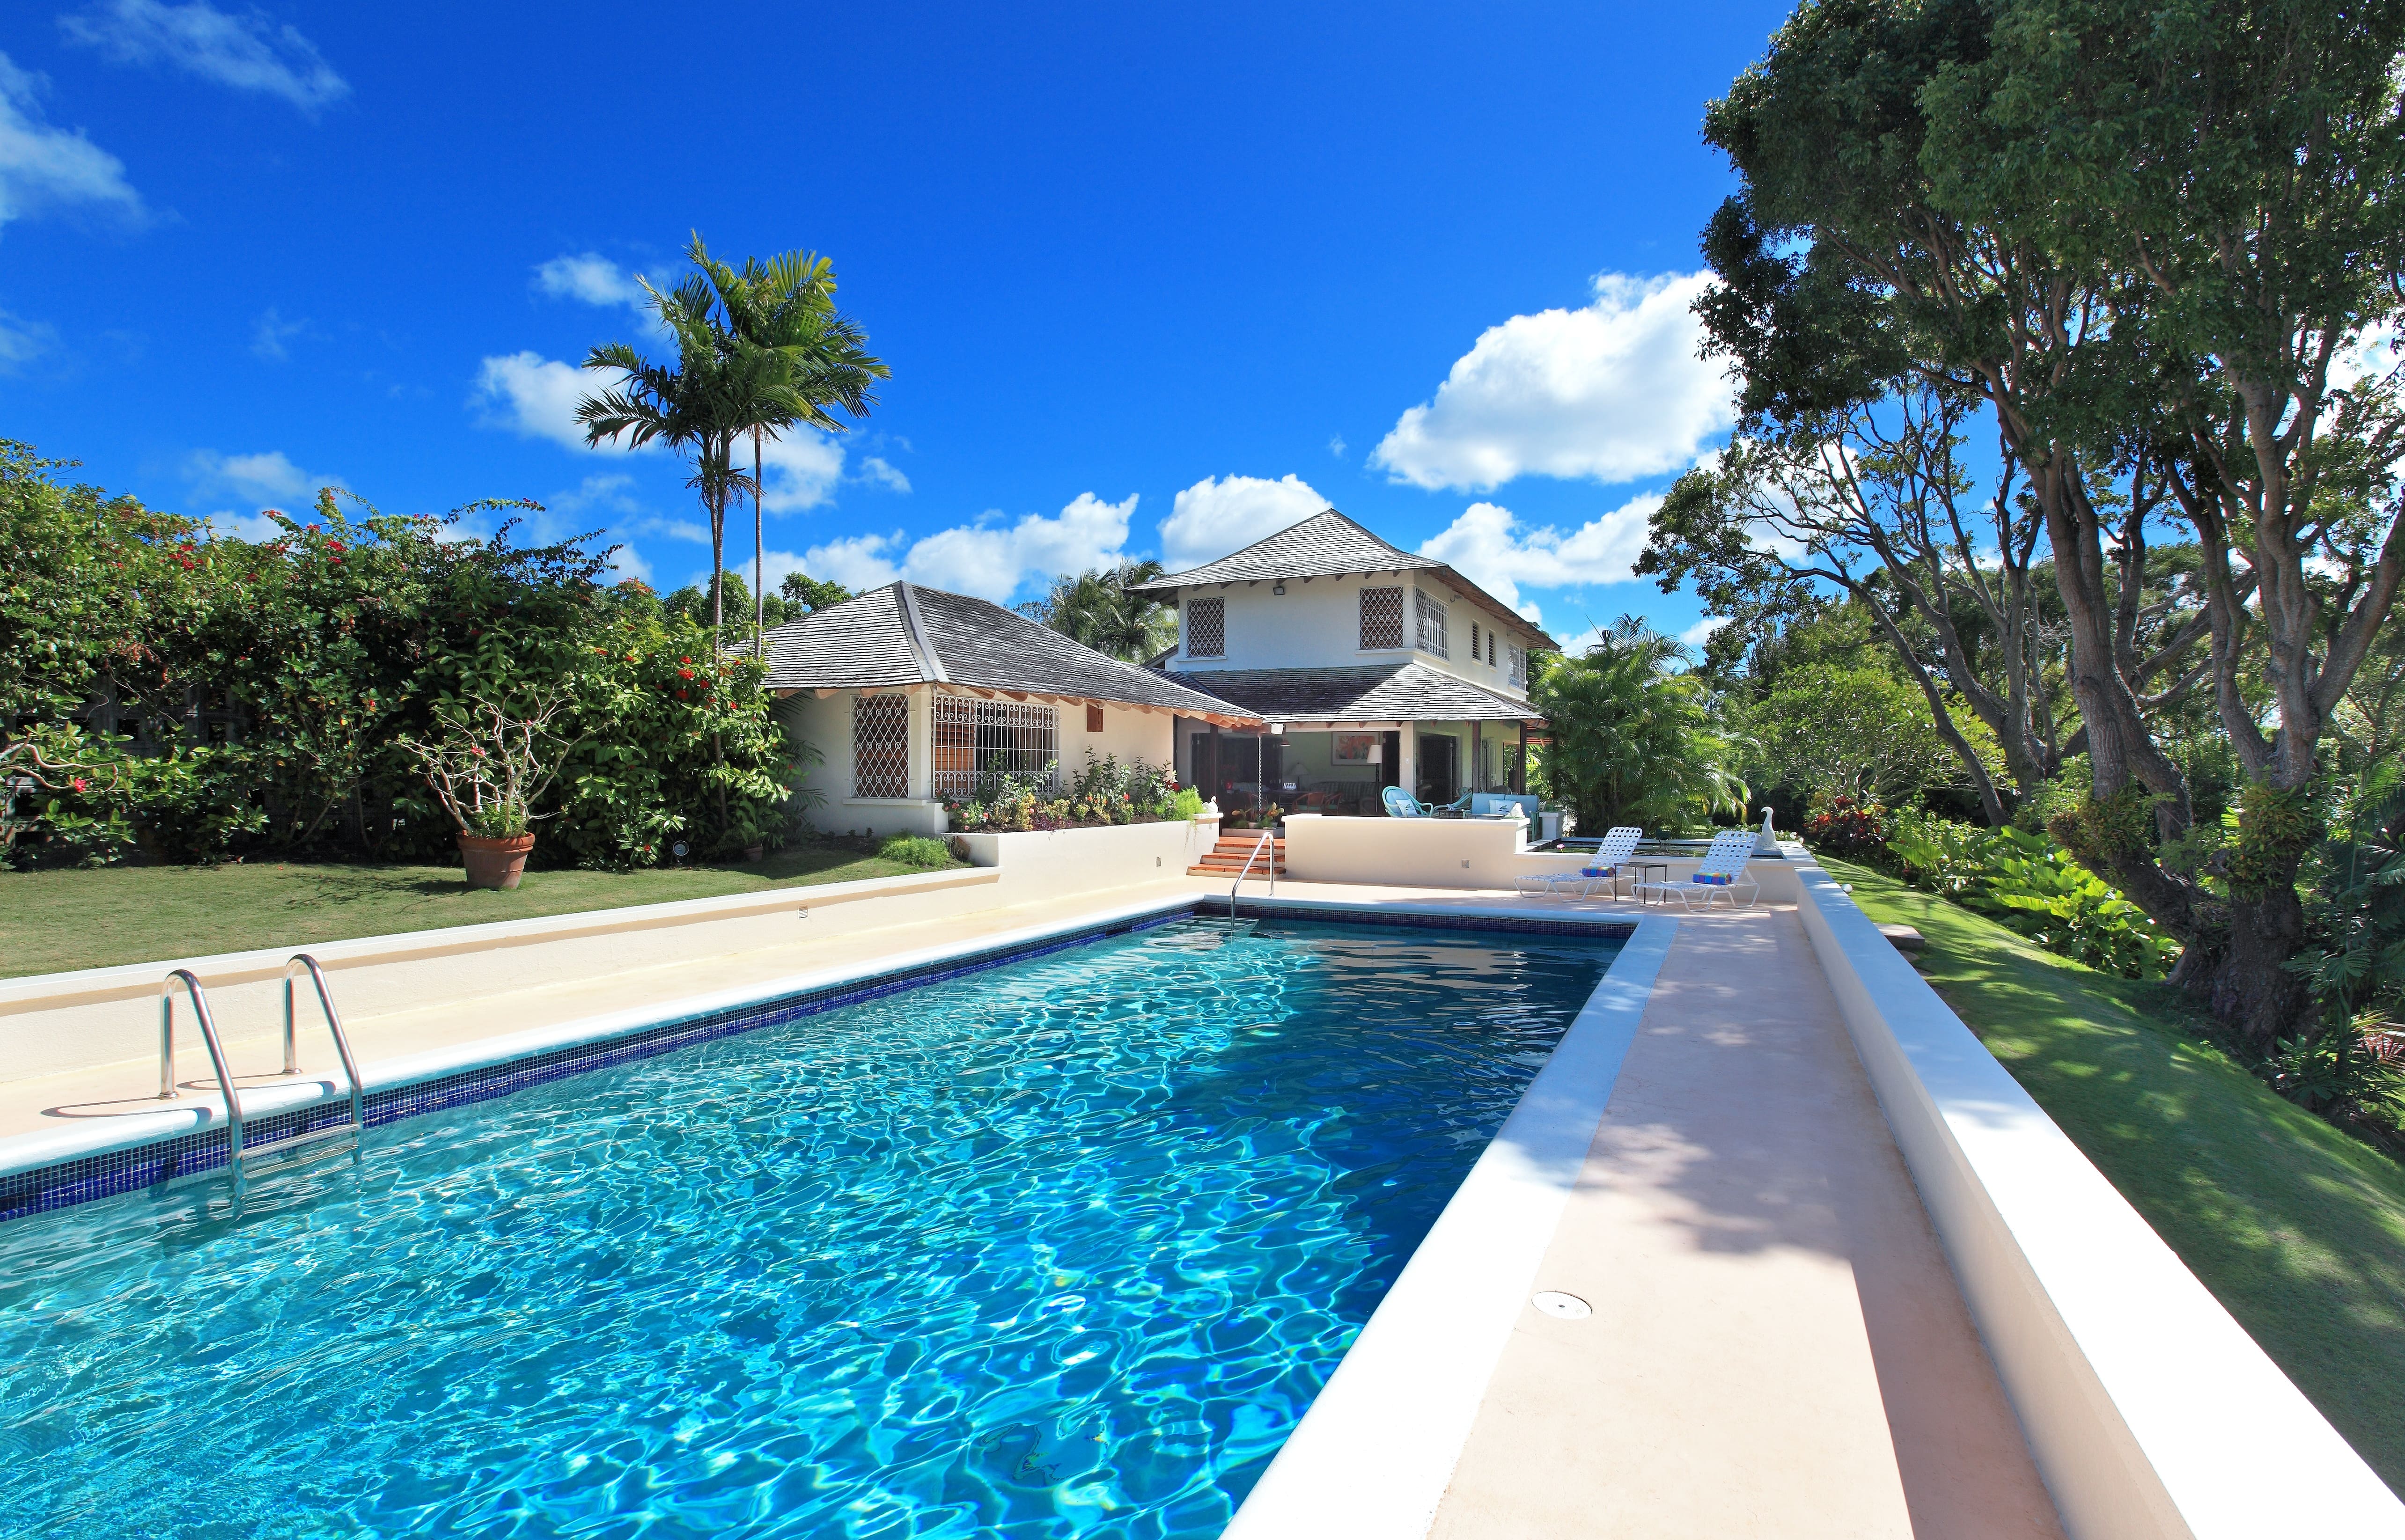 Vakantiewoning, villa, sandy lane, zwembad,luxe vakantie, Barbados, 6 tot 8 personen